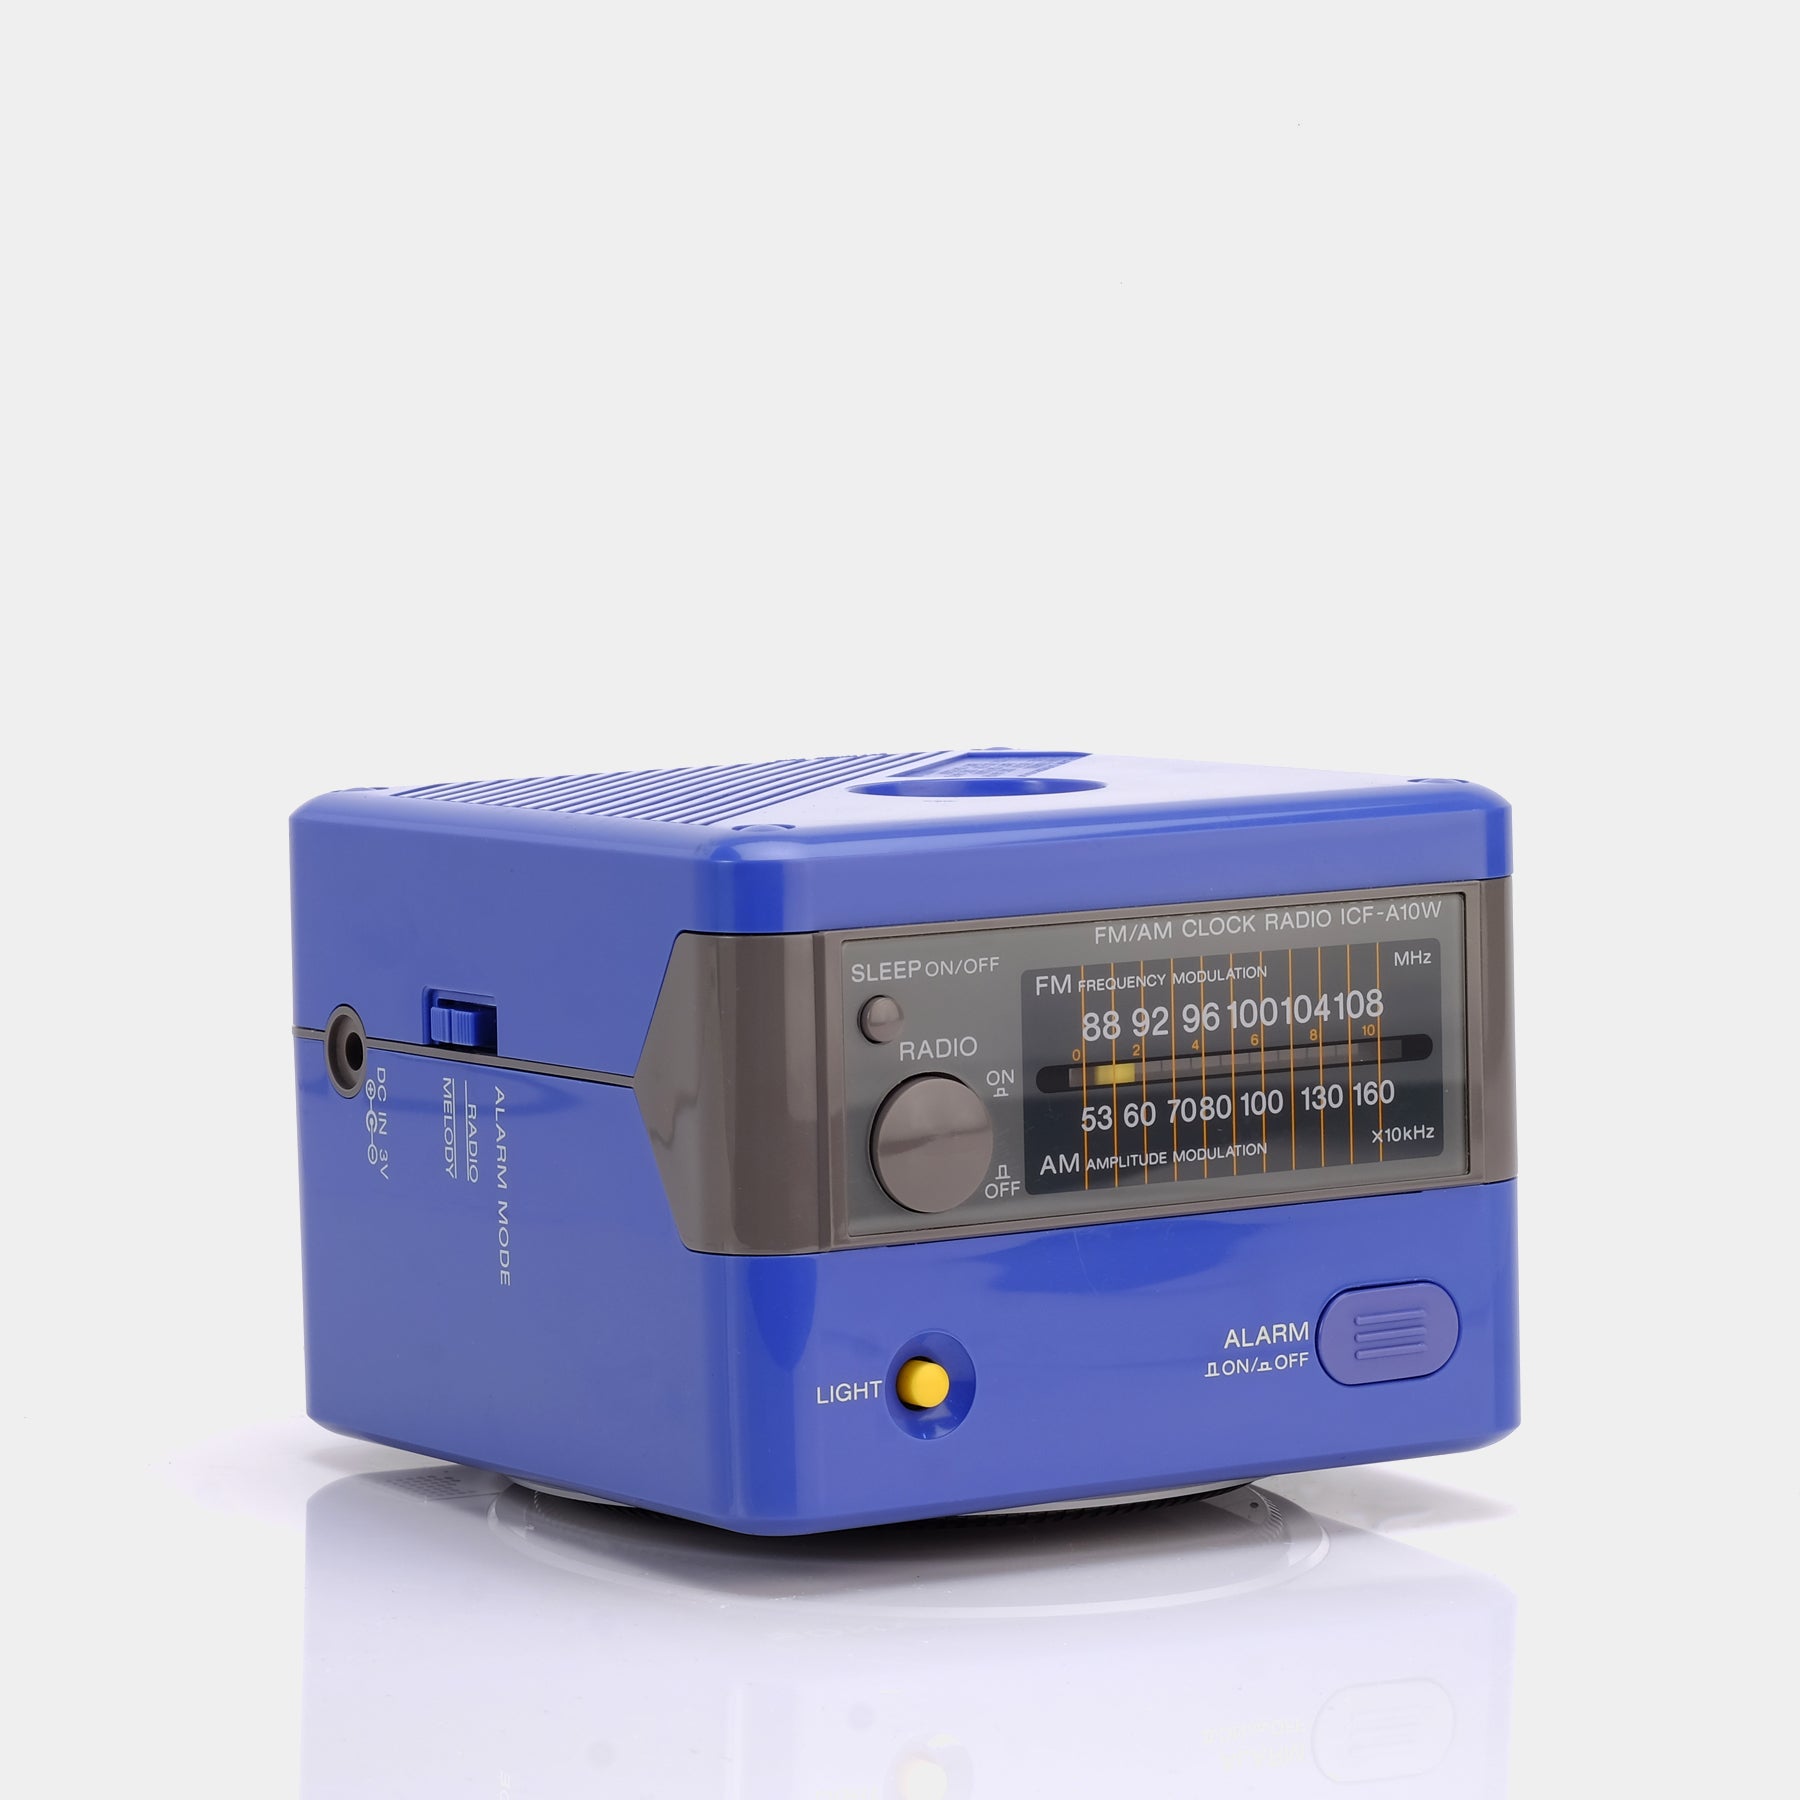 Sony ICF-A10W Blue AM/FM Alarm Clock Radio